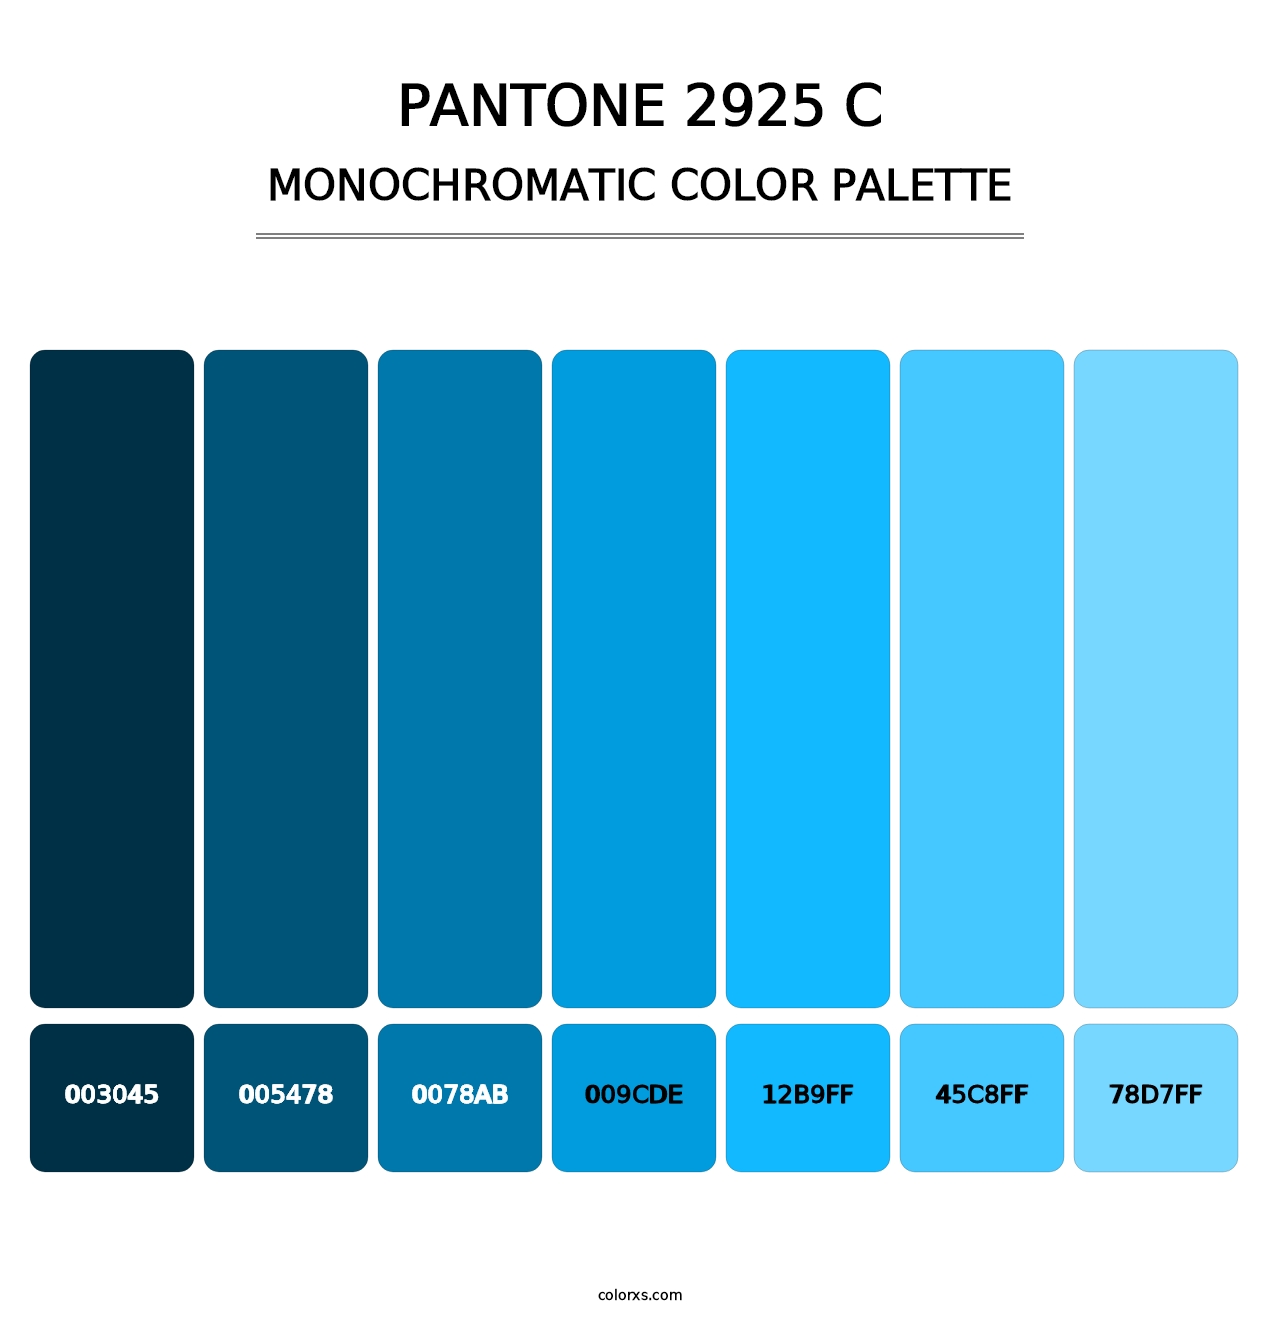 PANTONE 2925 C - Monochromatic Color Palette